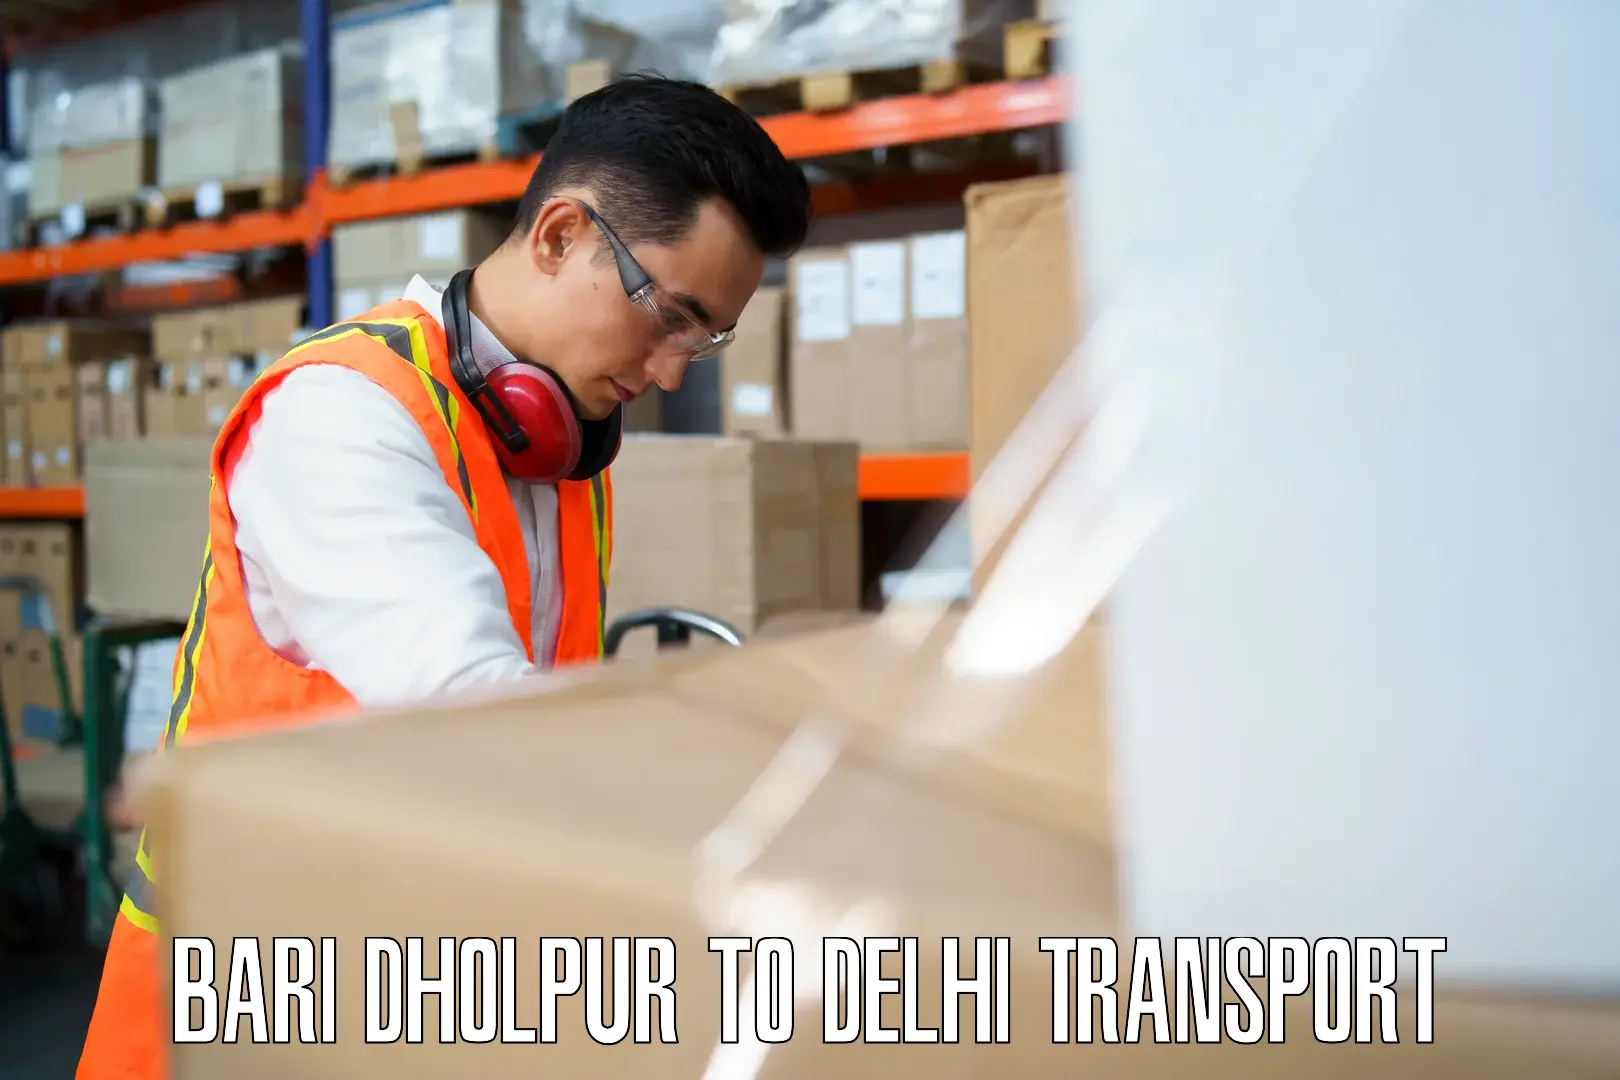 Domestic transport services Bari Dholpur to NIT Delhi